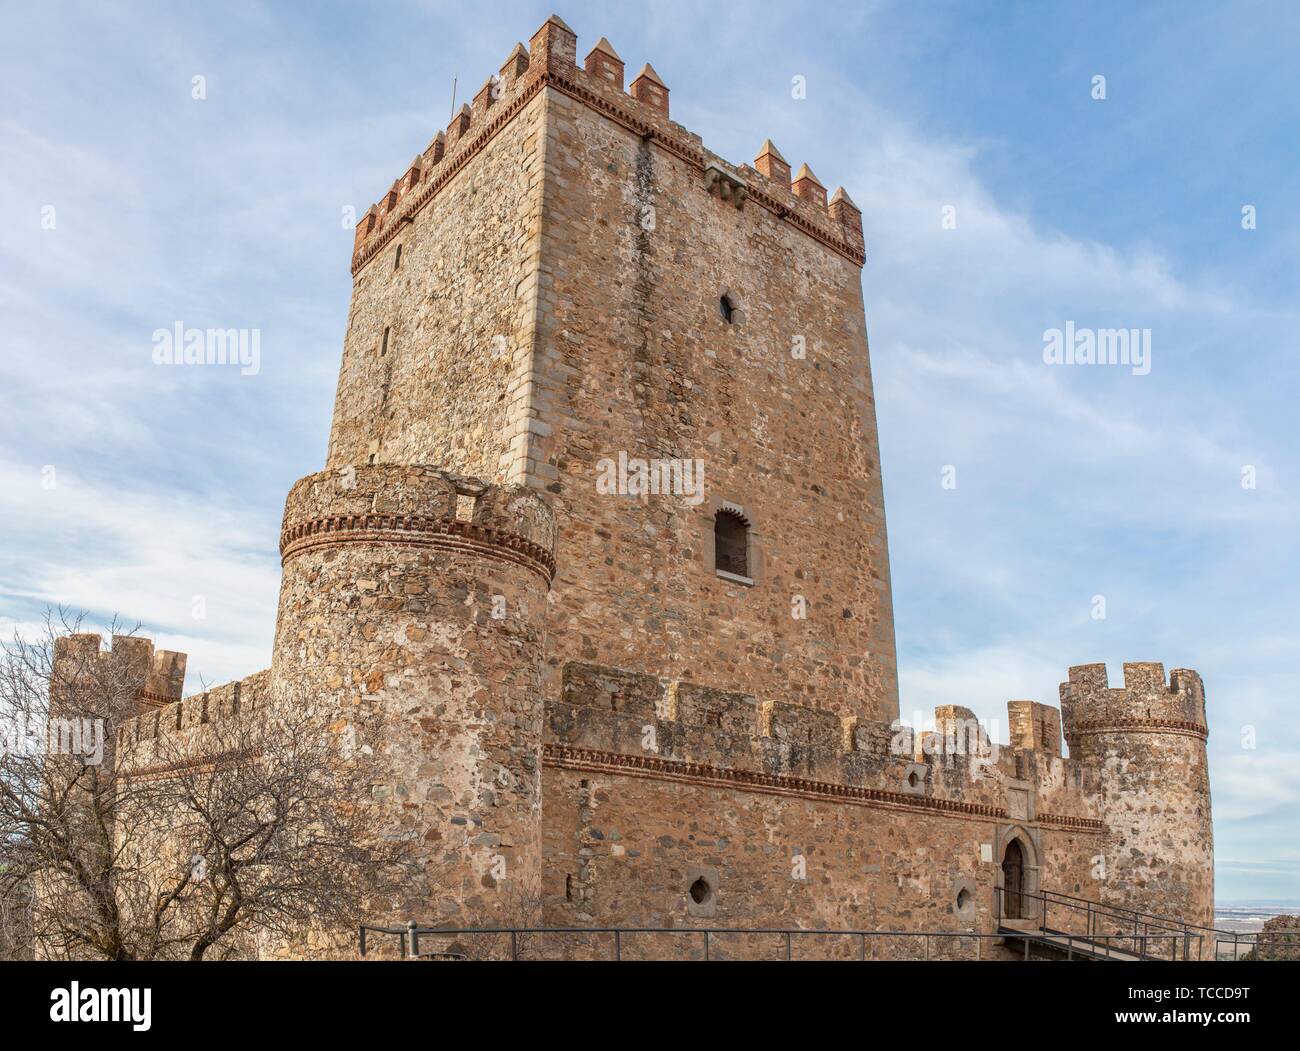 Castillo de Nogales, Badajoz, España. Fortaleza defensiva del siglo 15. Lado Sur. Foto de stock